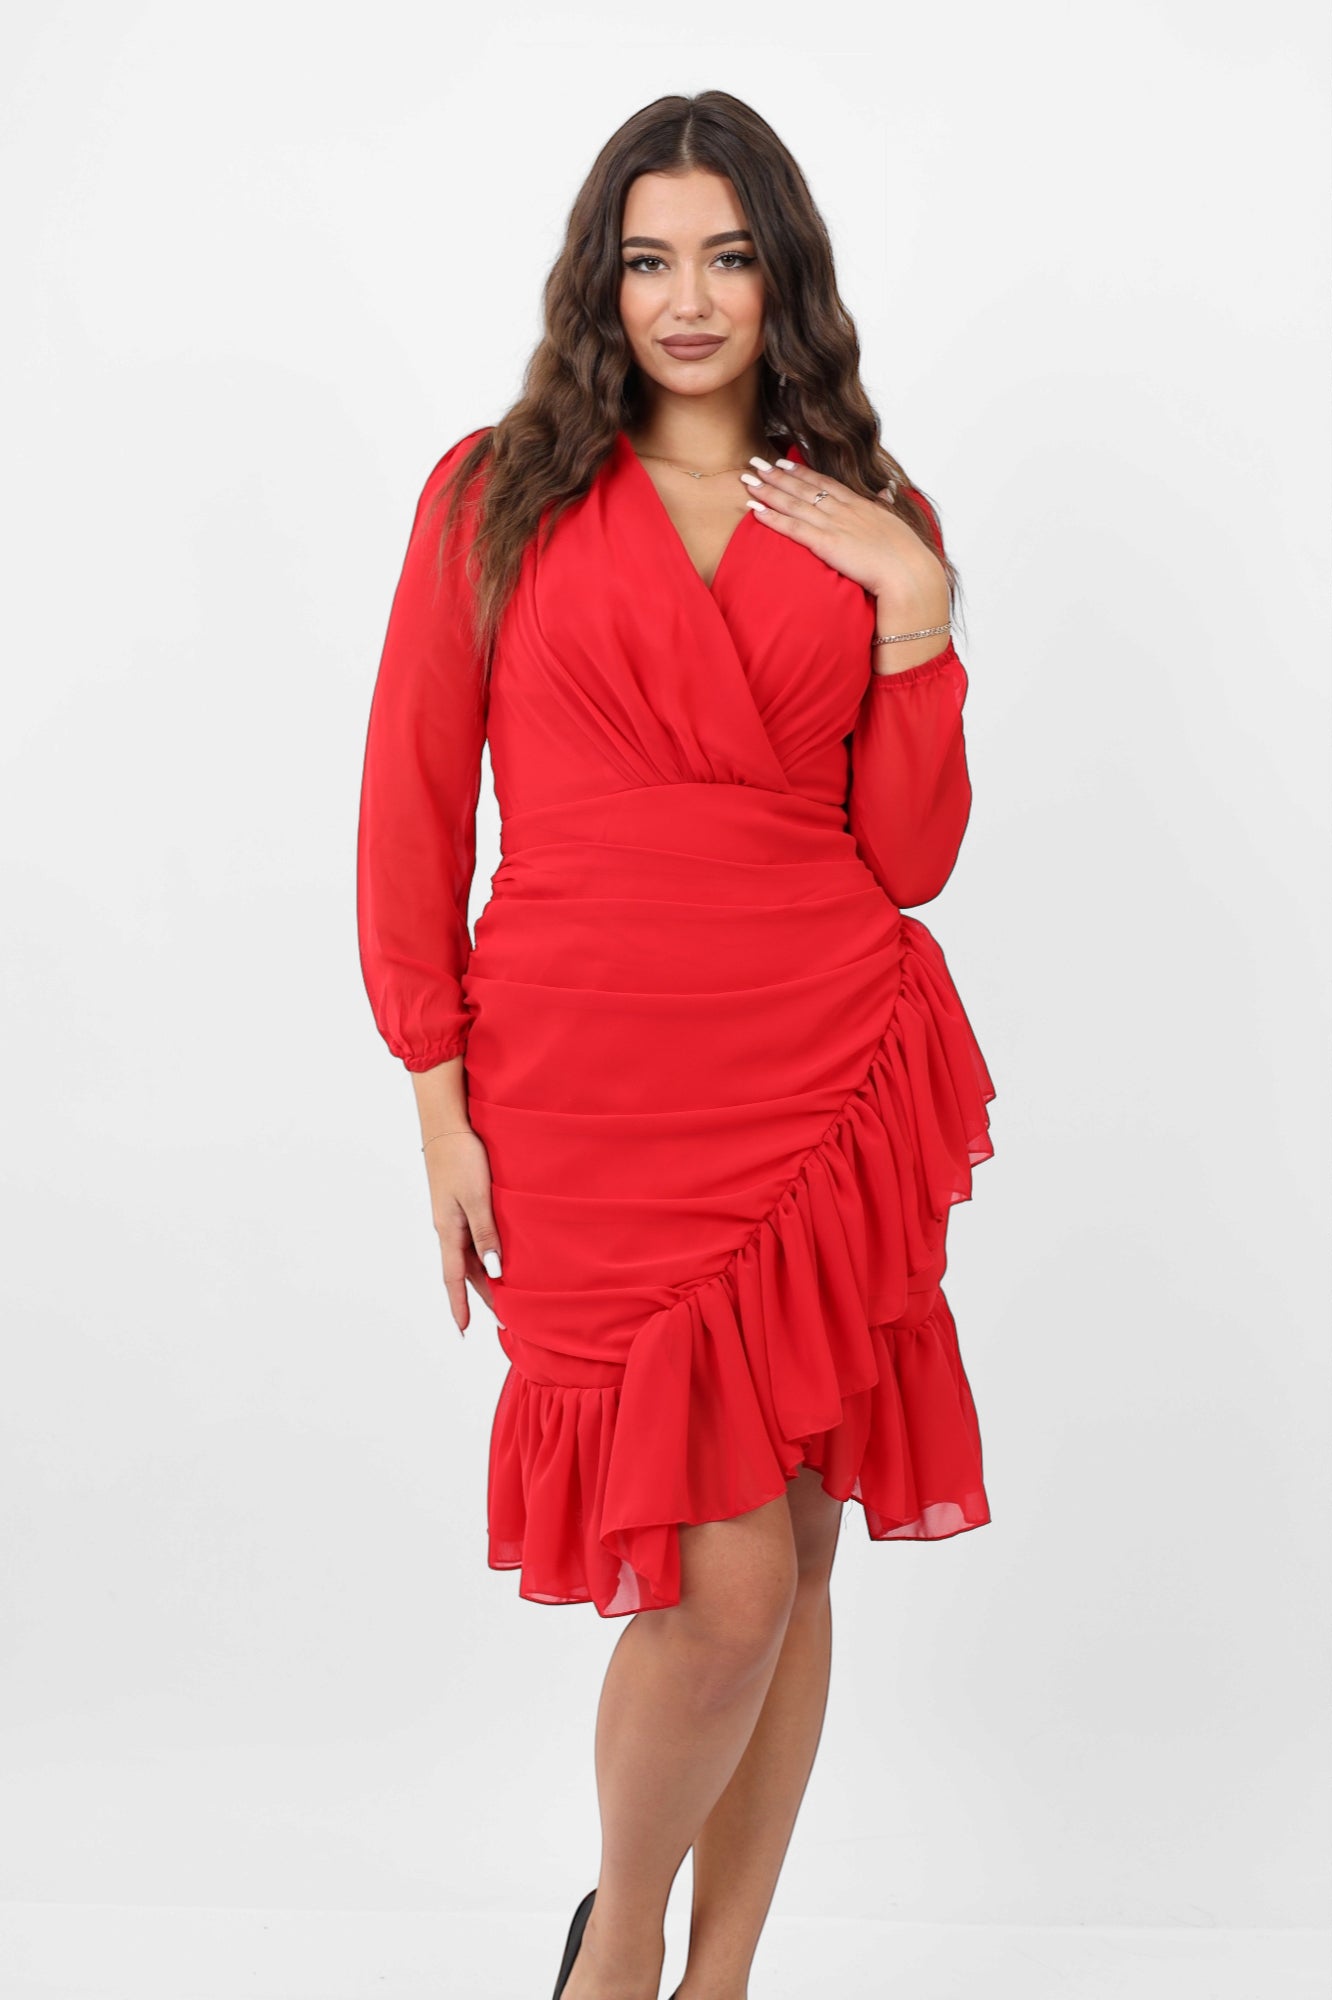 Ruffled Chiffon Dress - Red